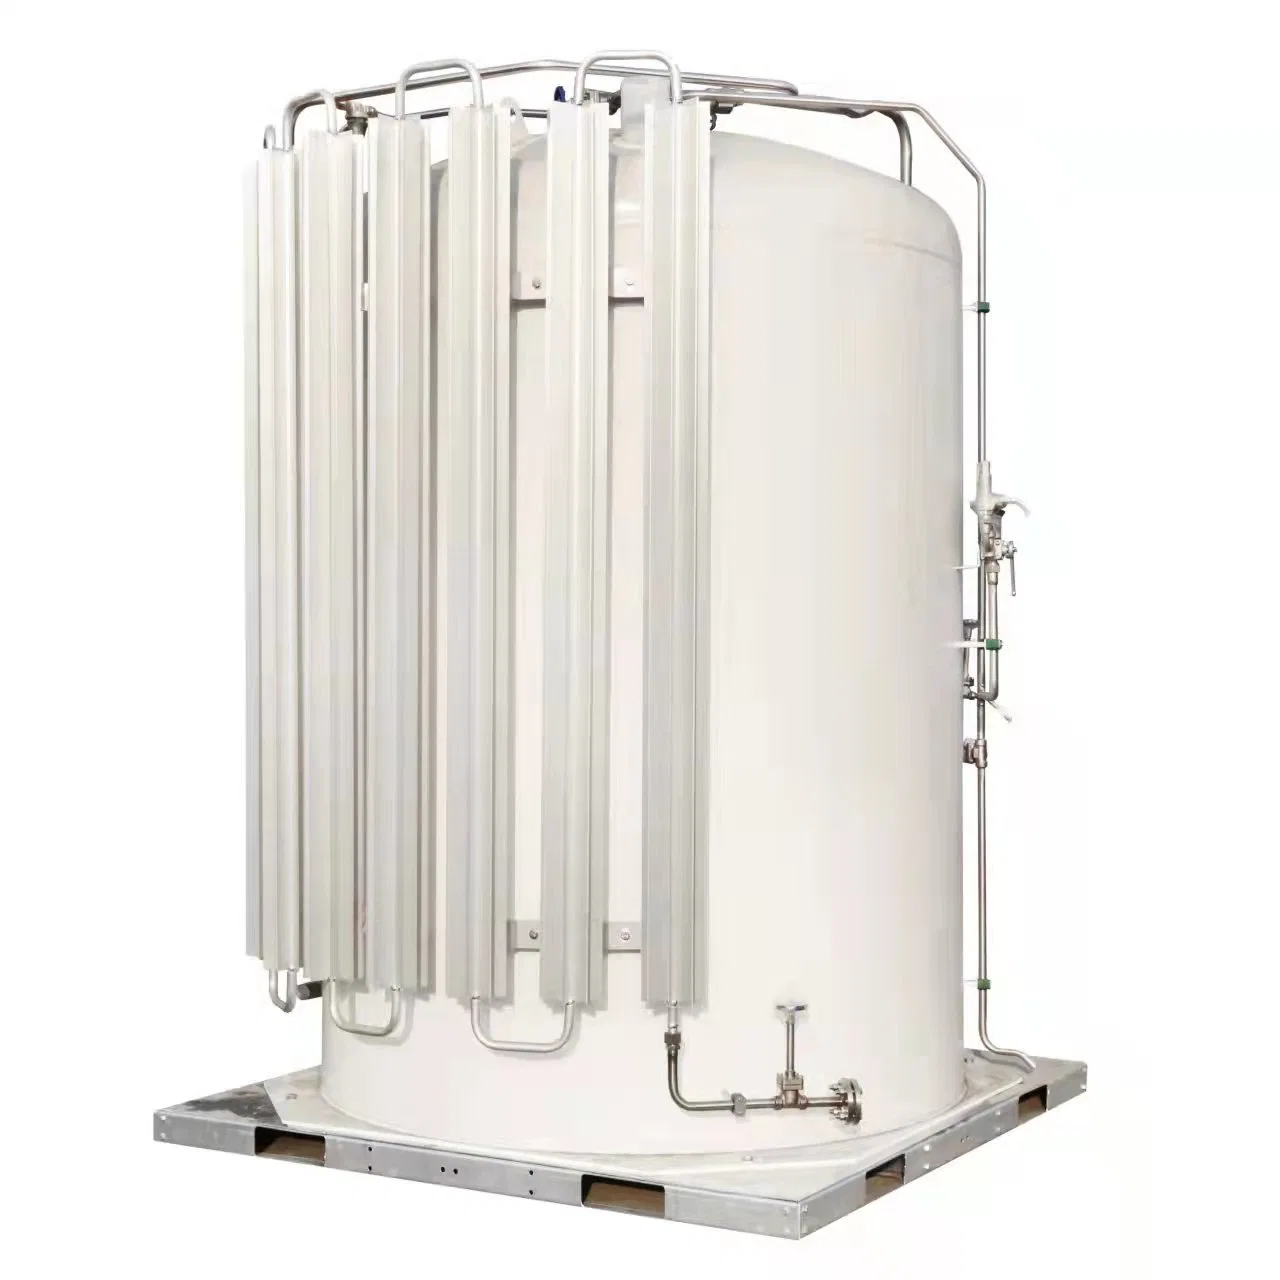 High Pressure Liquid Oxygen Cylinder Manufacturer Nitrogen Gas Cylinder Storage Tank Price